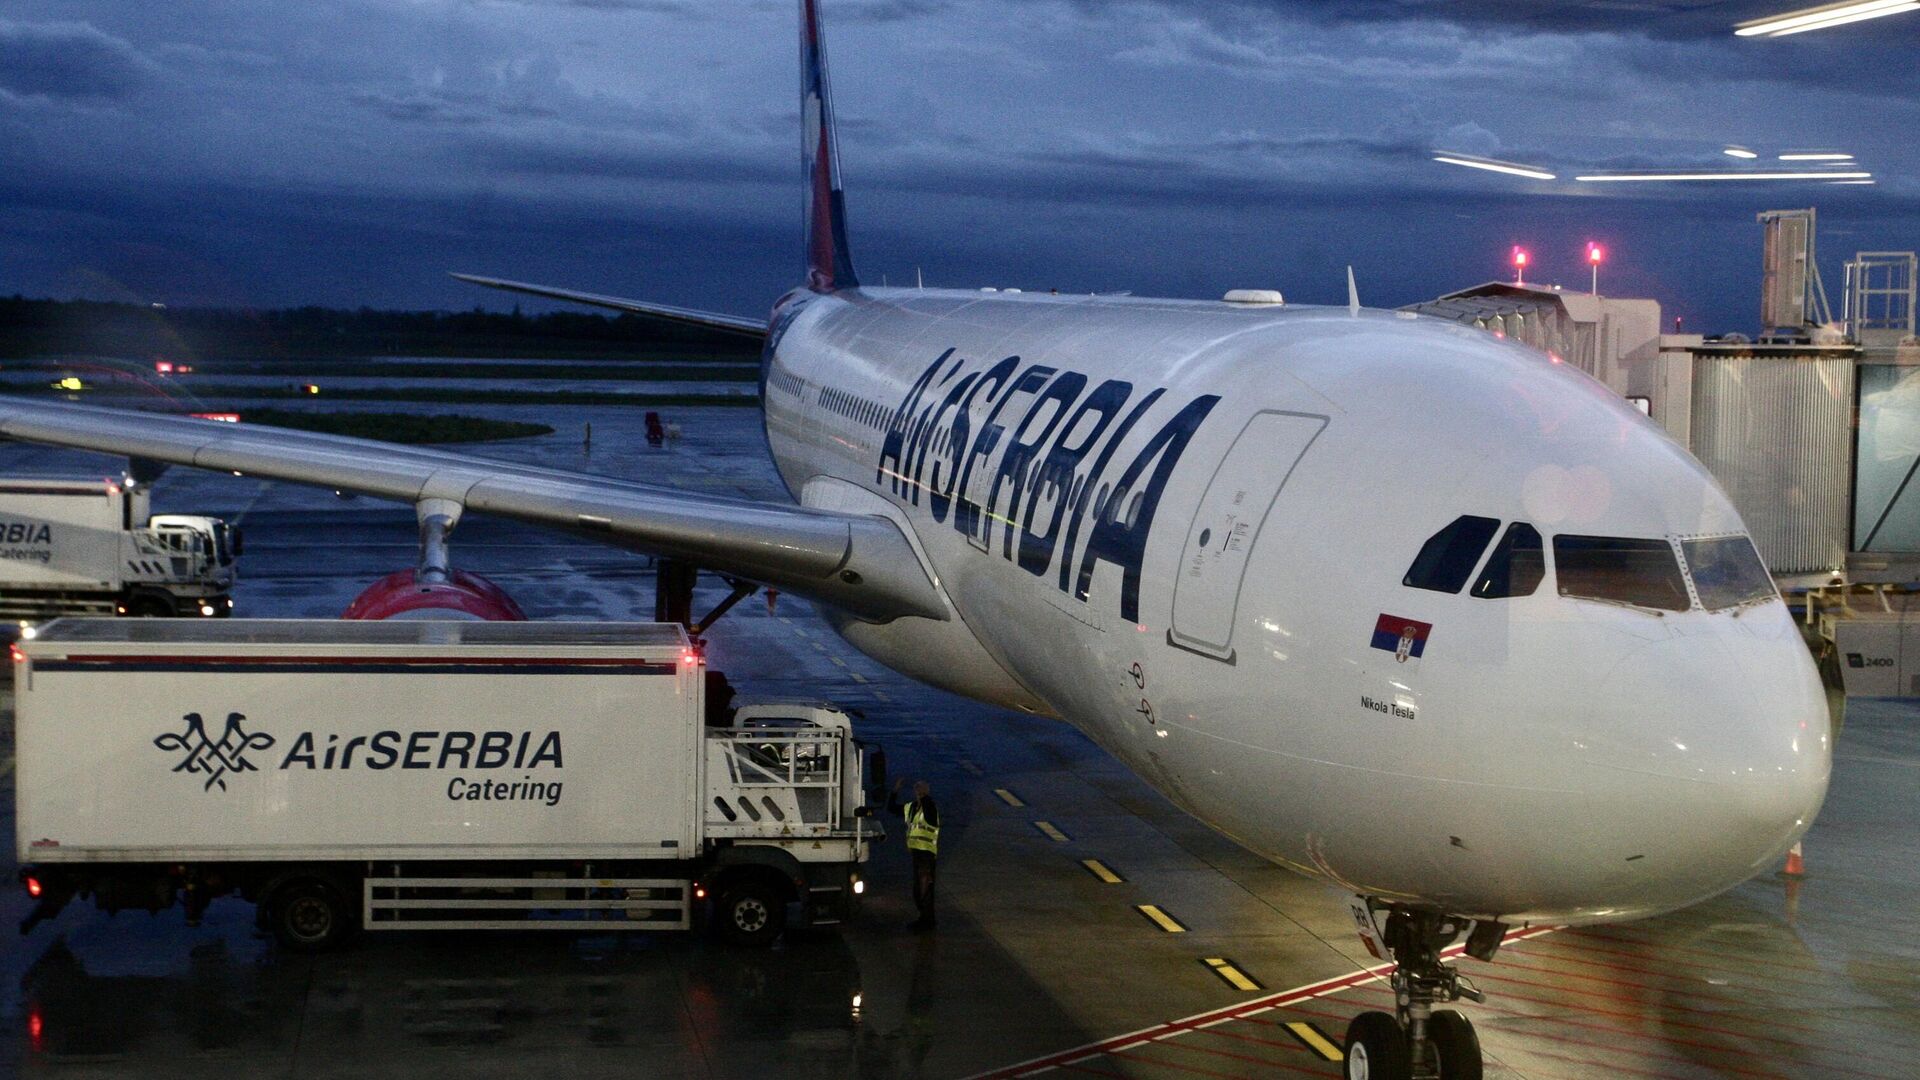  «Эйр Сербия» ;: Возможные задержки и отмены рейсов из-за запрета на дозаправку в аэропорту Белграда